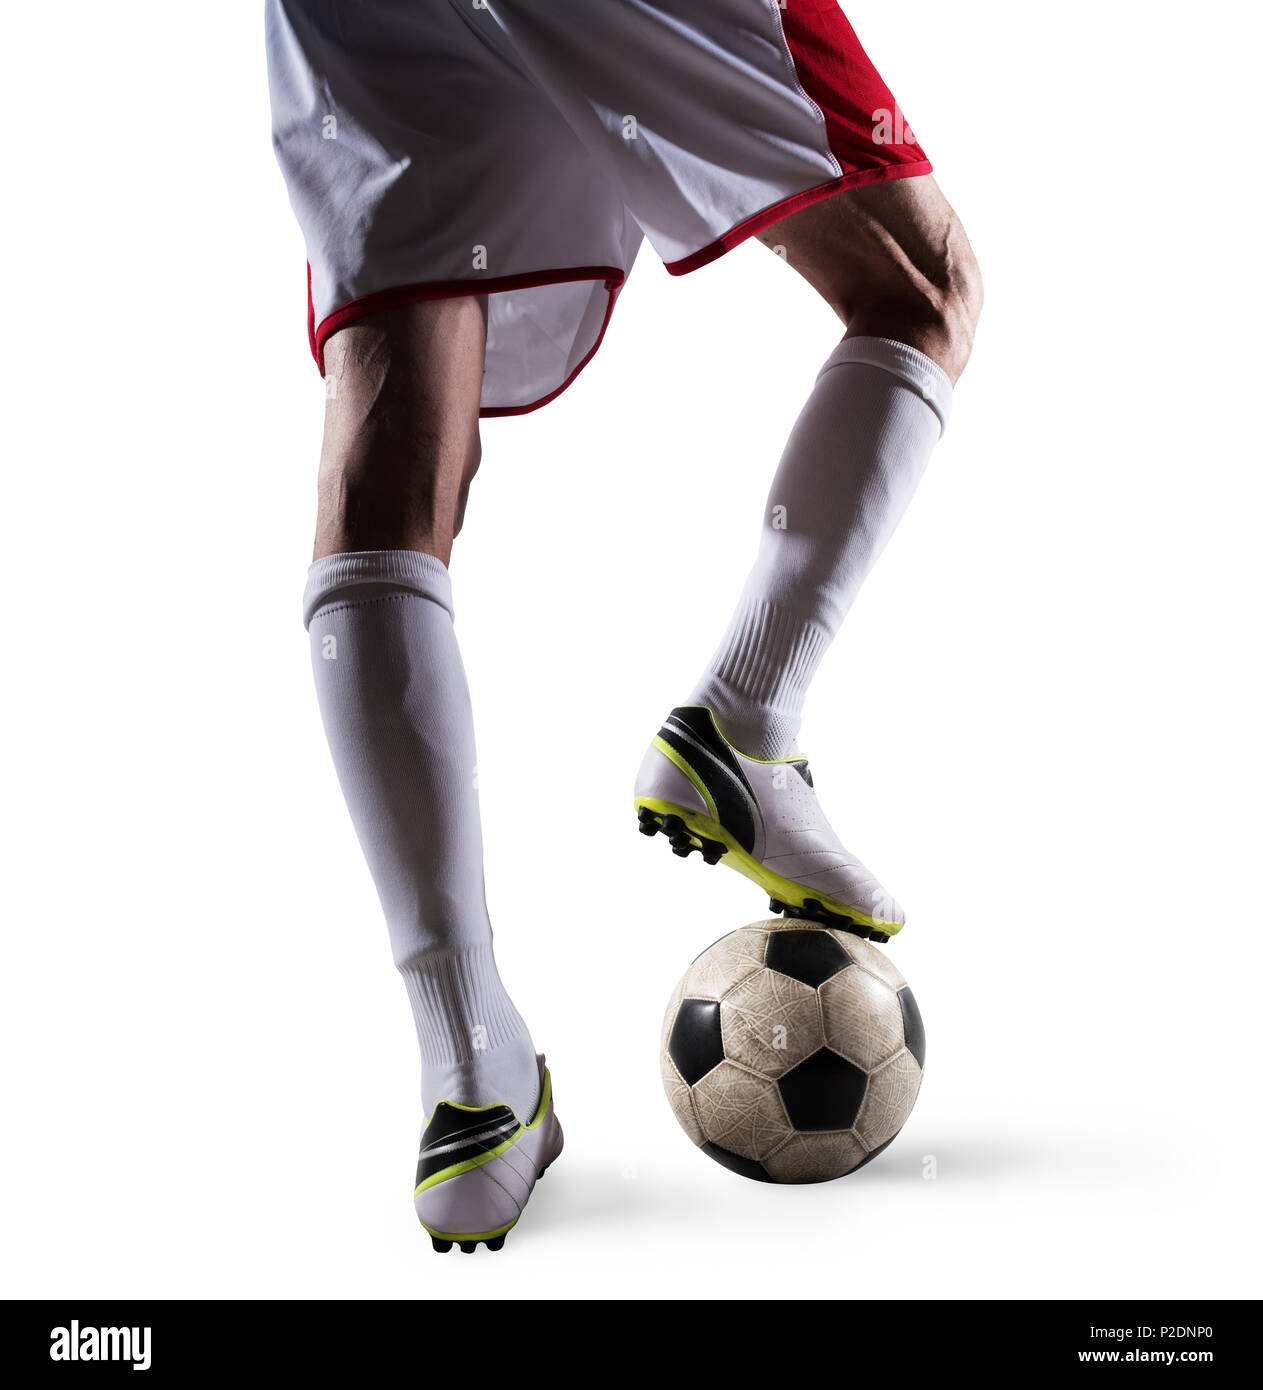 Giocatore di calcio con soccerball pronto per giocare. Isolato su sfondo bianco Foto Stock